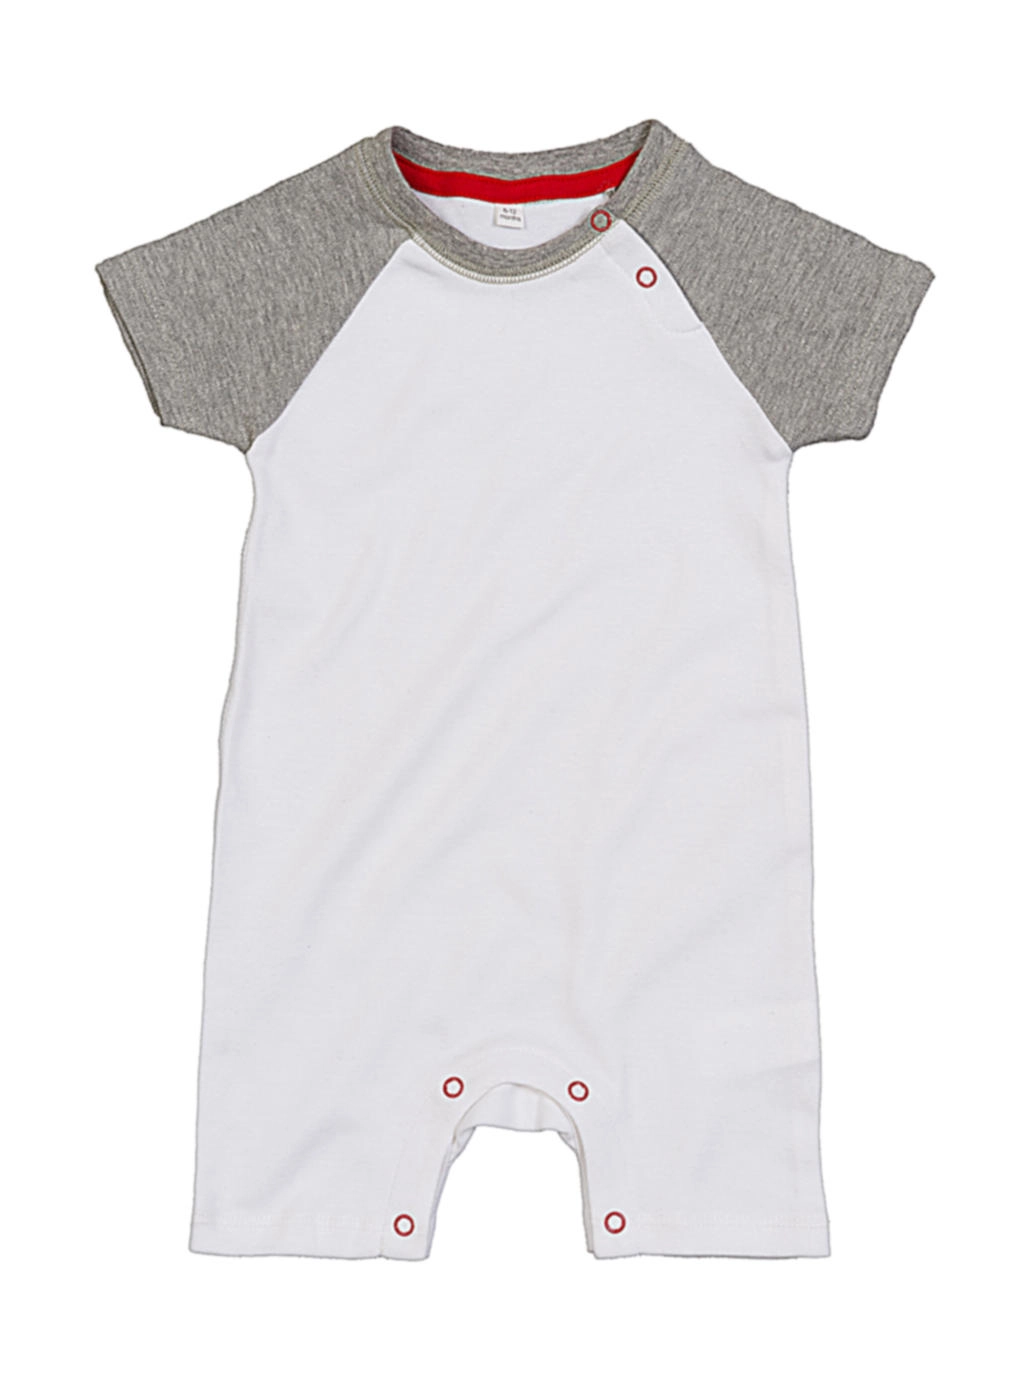 Baby Baseball Playsuit zum Besticken und Bedrucken in der Farbe White/Heather Grey/Red mit Ihren Logo, Schriftzug oder Motiv.